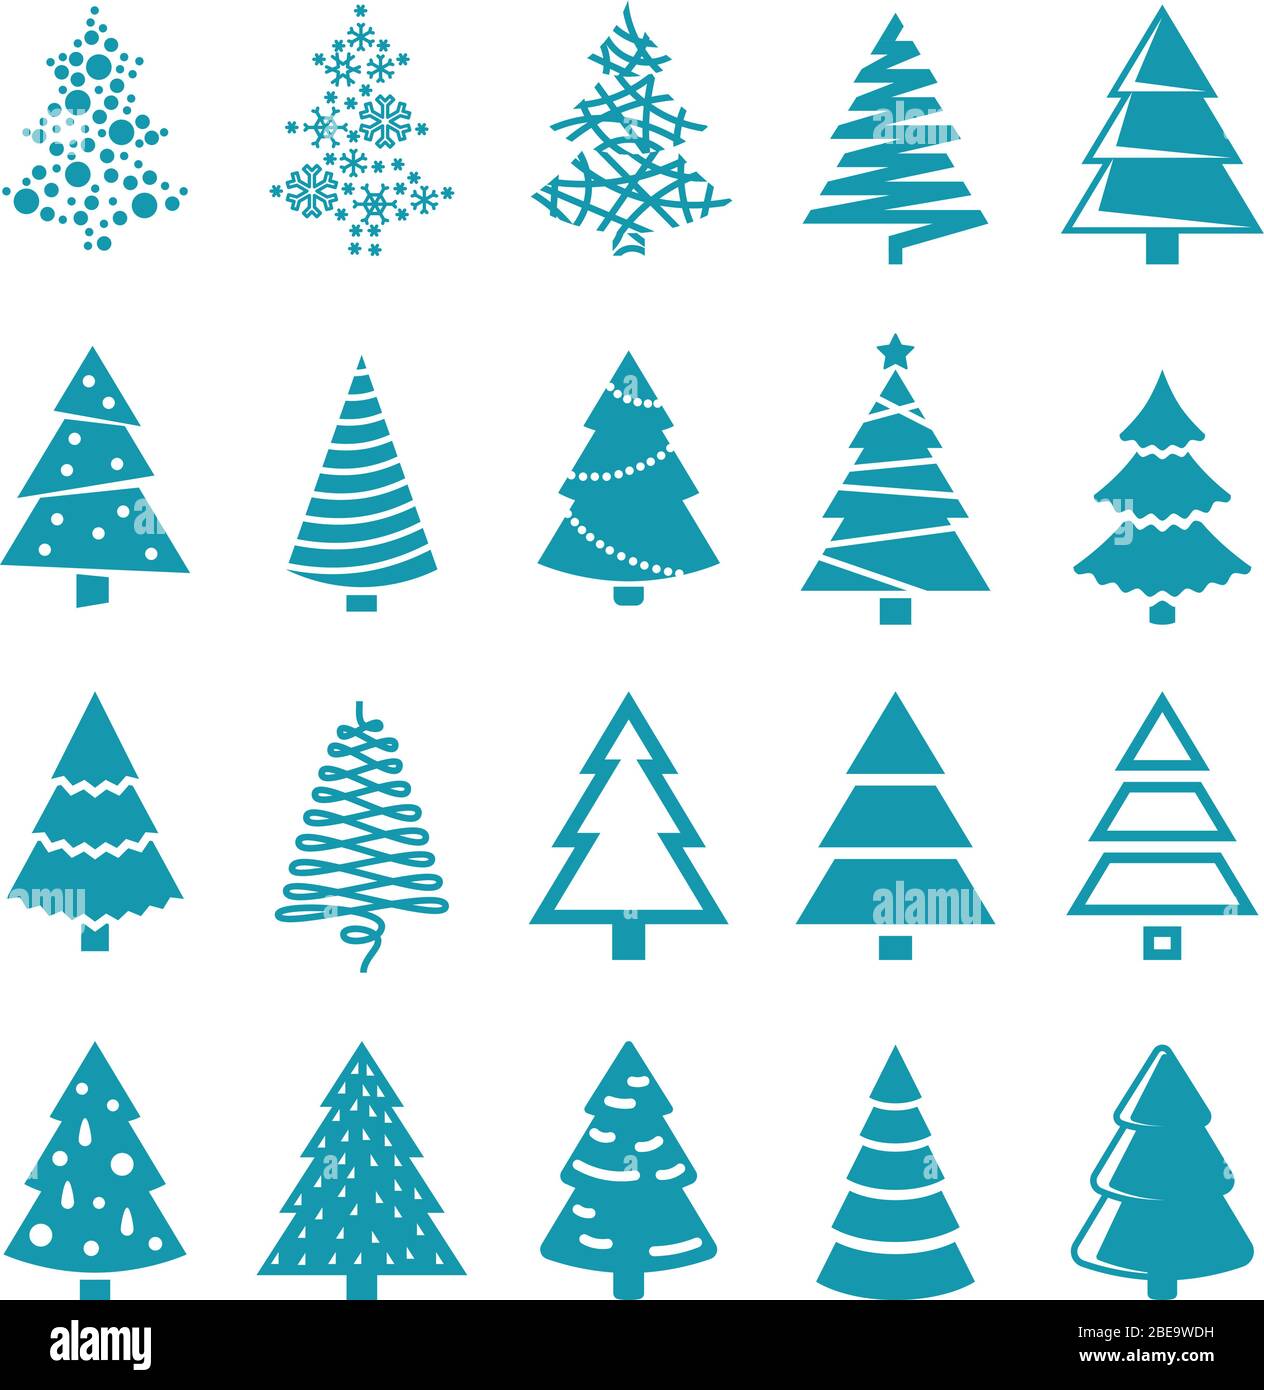 Schwarze Silhouette weihnachtsbäume Vektor stilisierte einfache Symbole. Set von Bäumen für Weihnachten und Neujahr Silhouette monochrome Illustration Stock Vektor